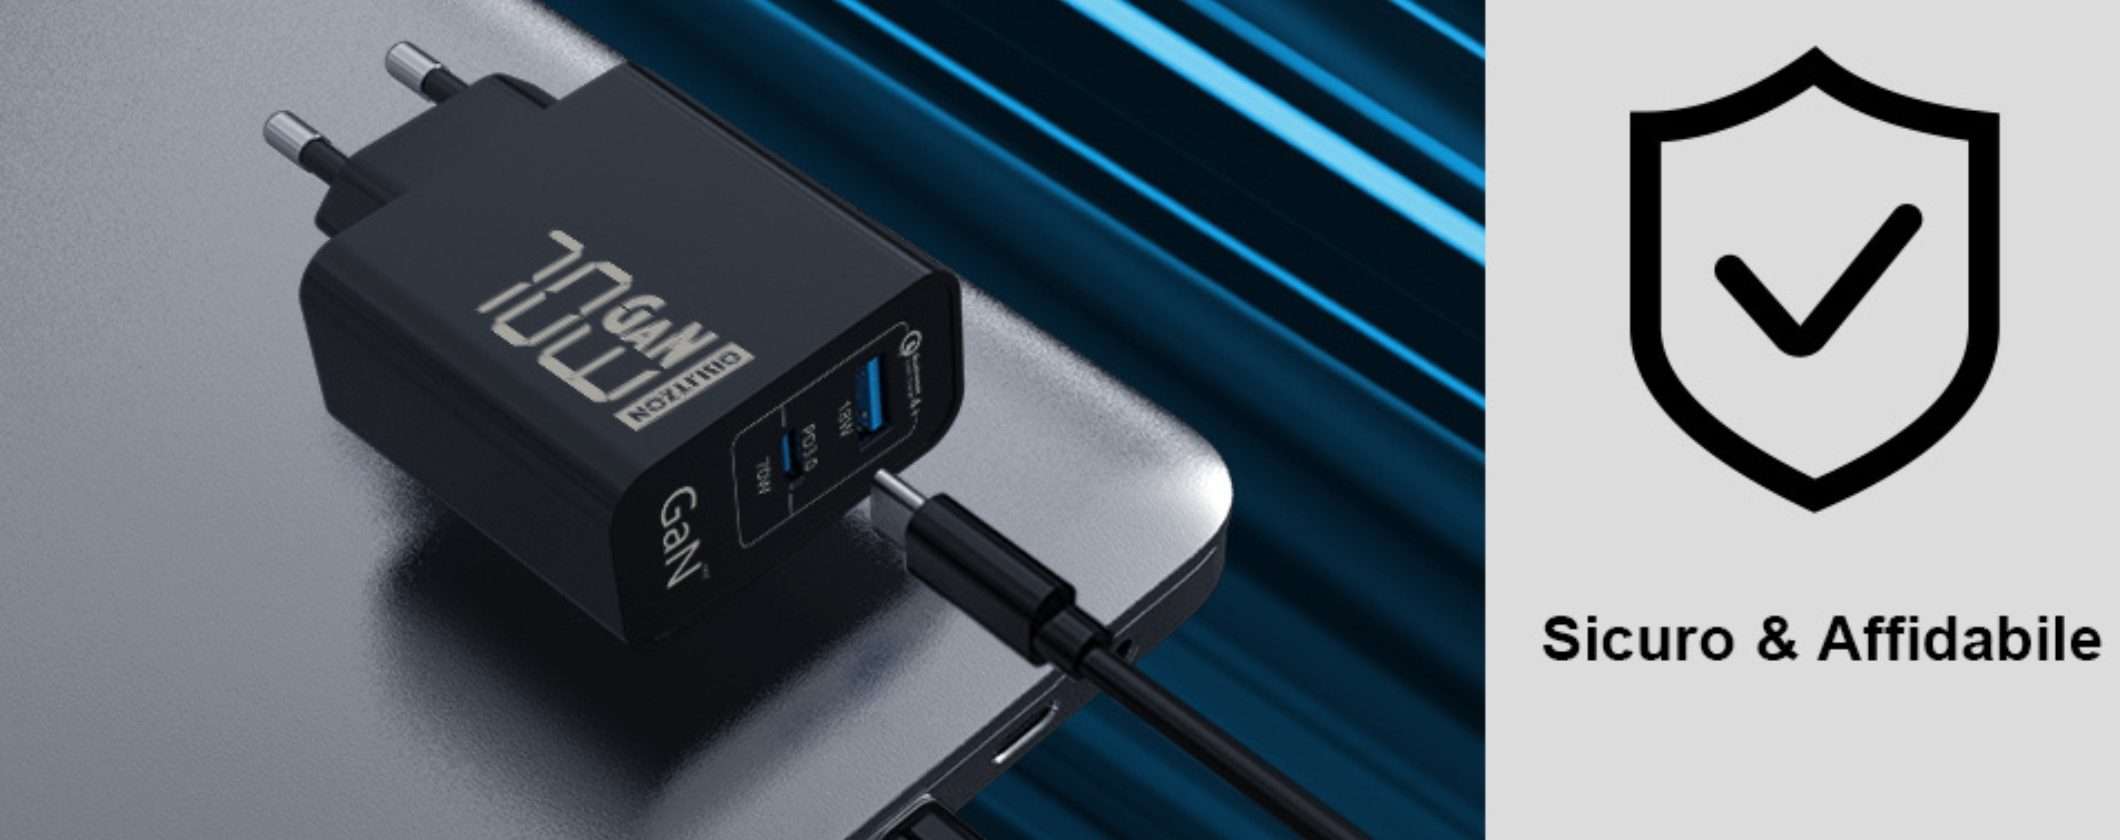 Caricatore USB 70W GaN: la nuova tecnologia è in offerta a 10€